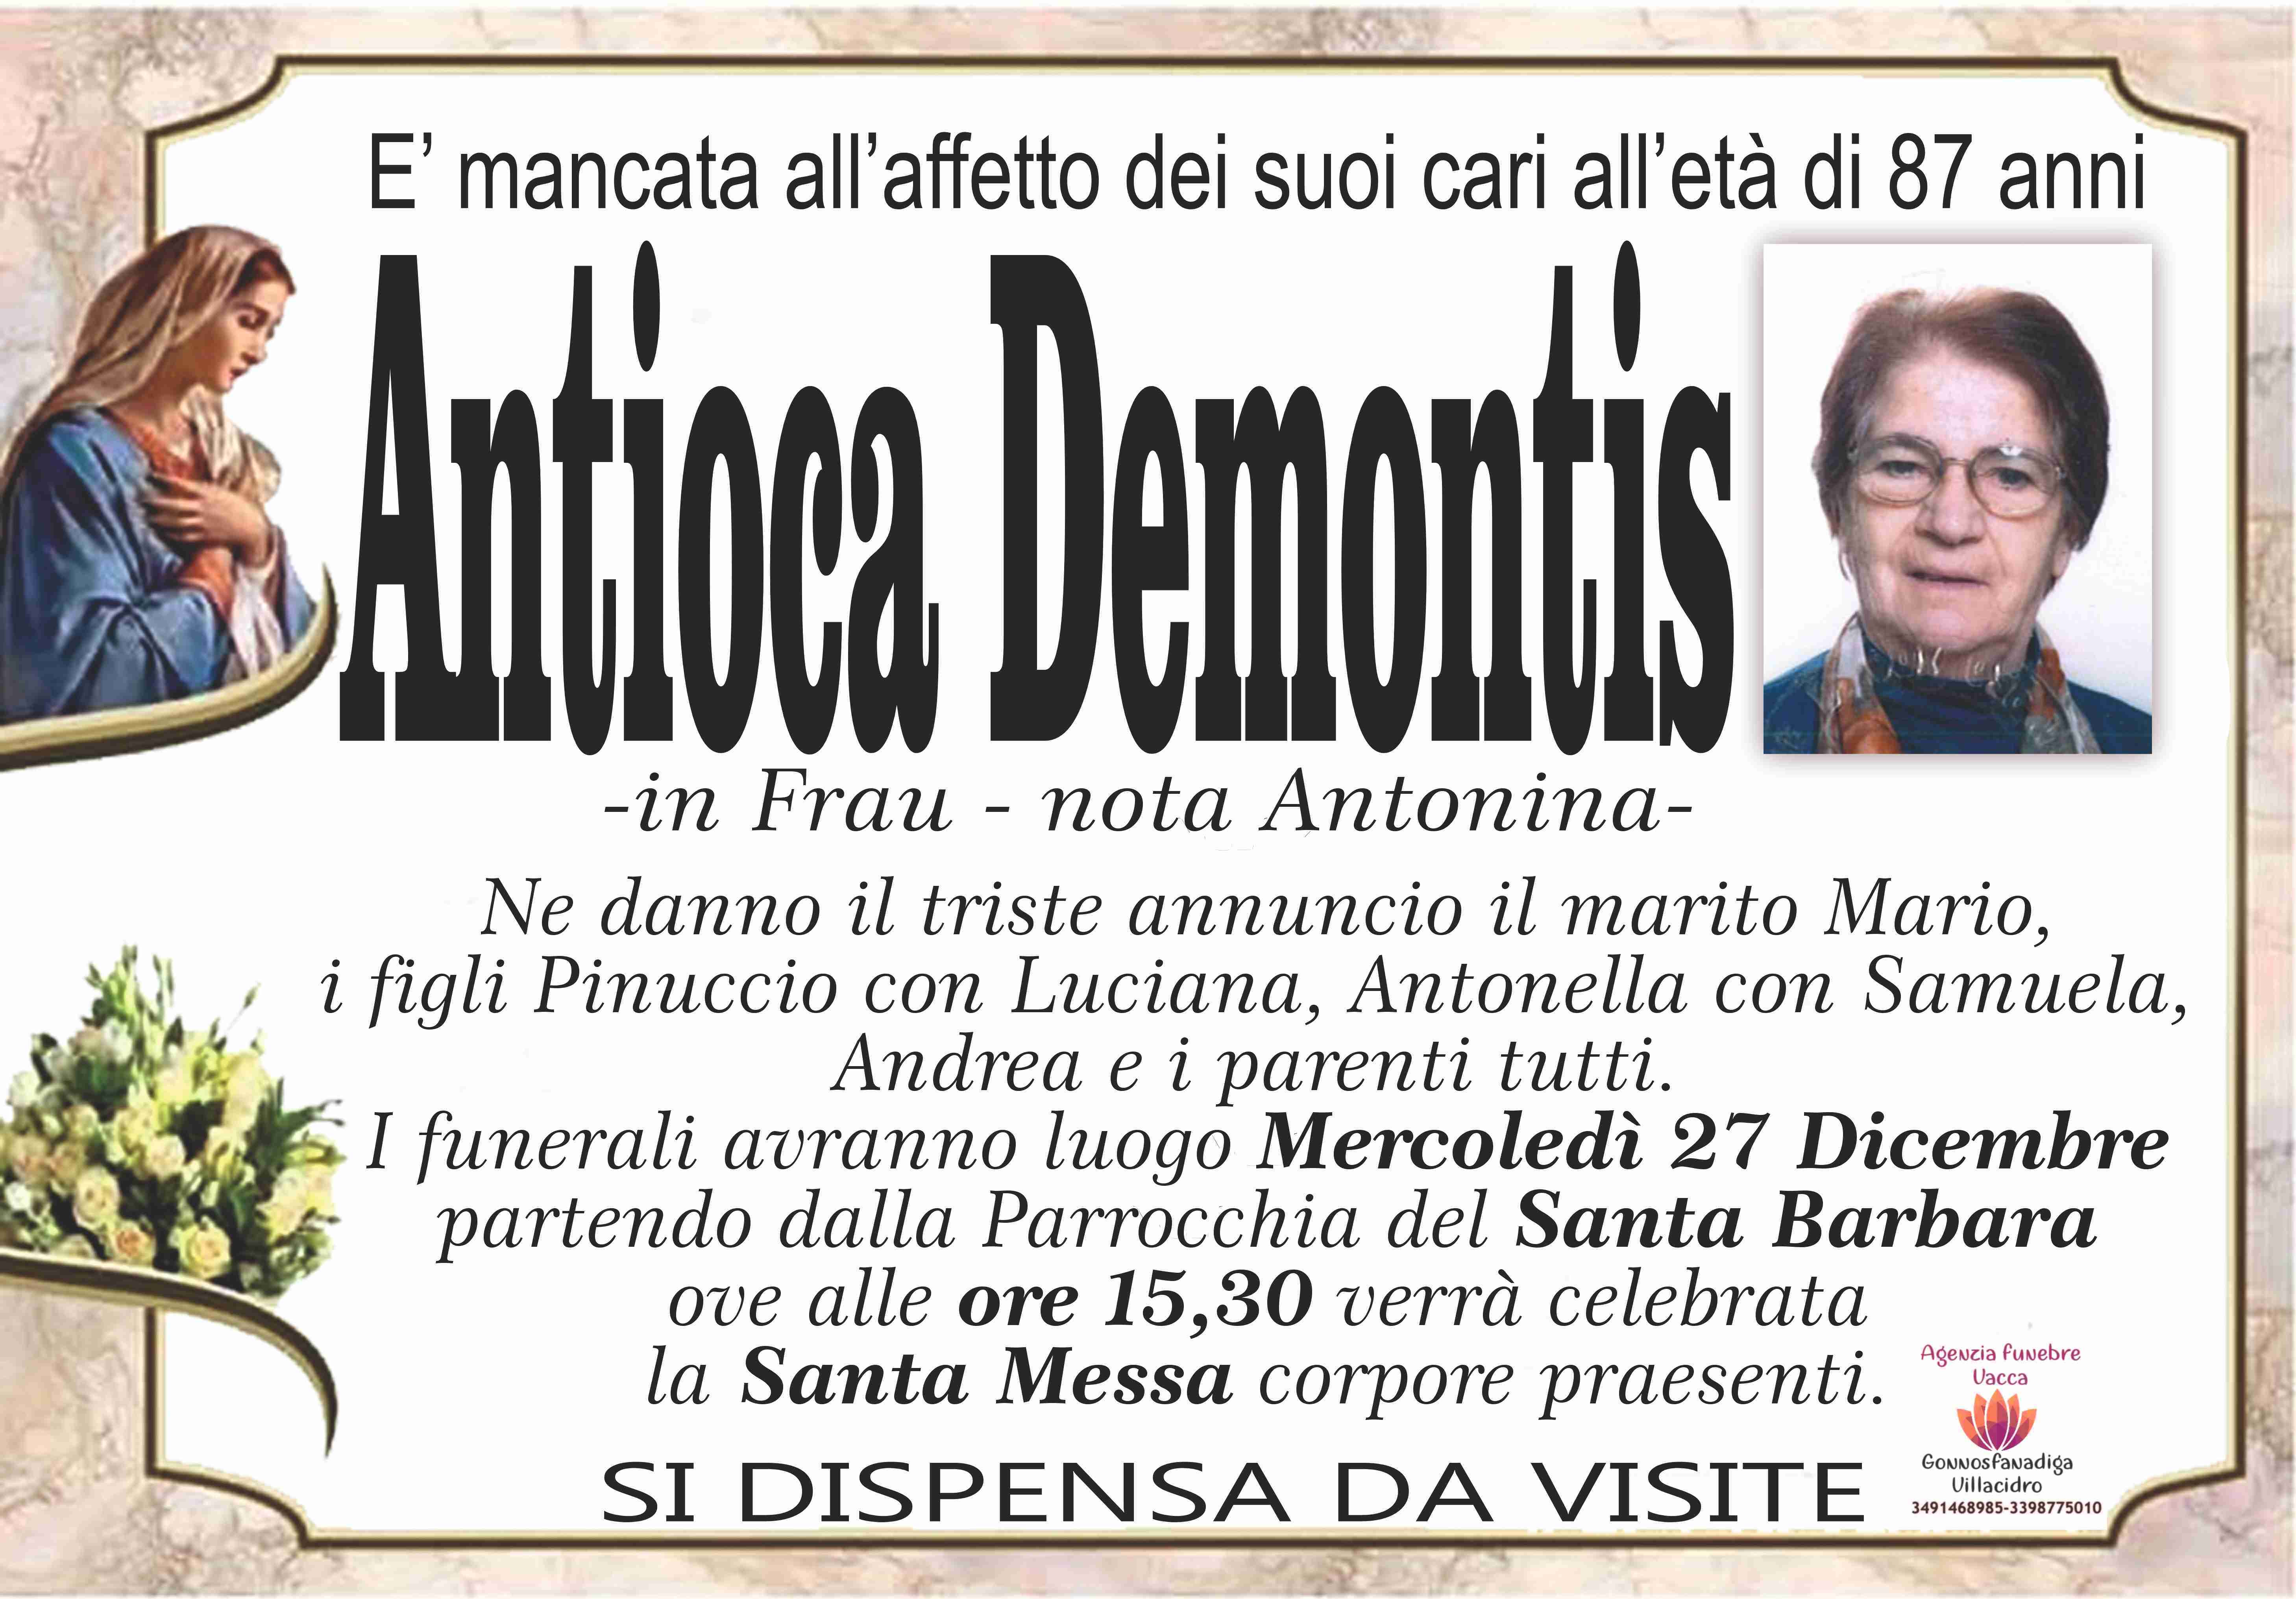 Antioca Demontis